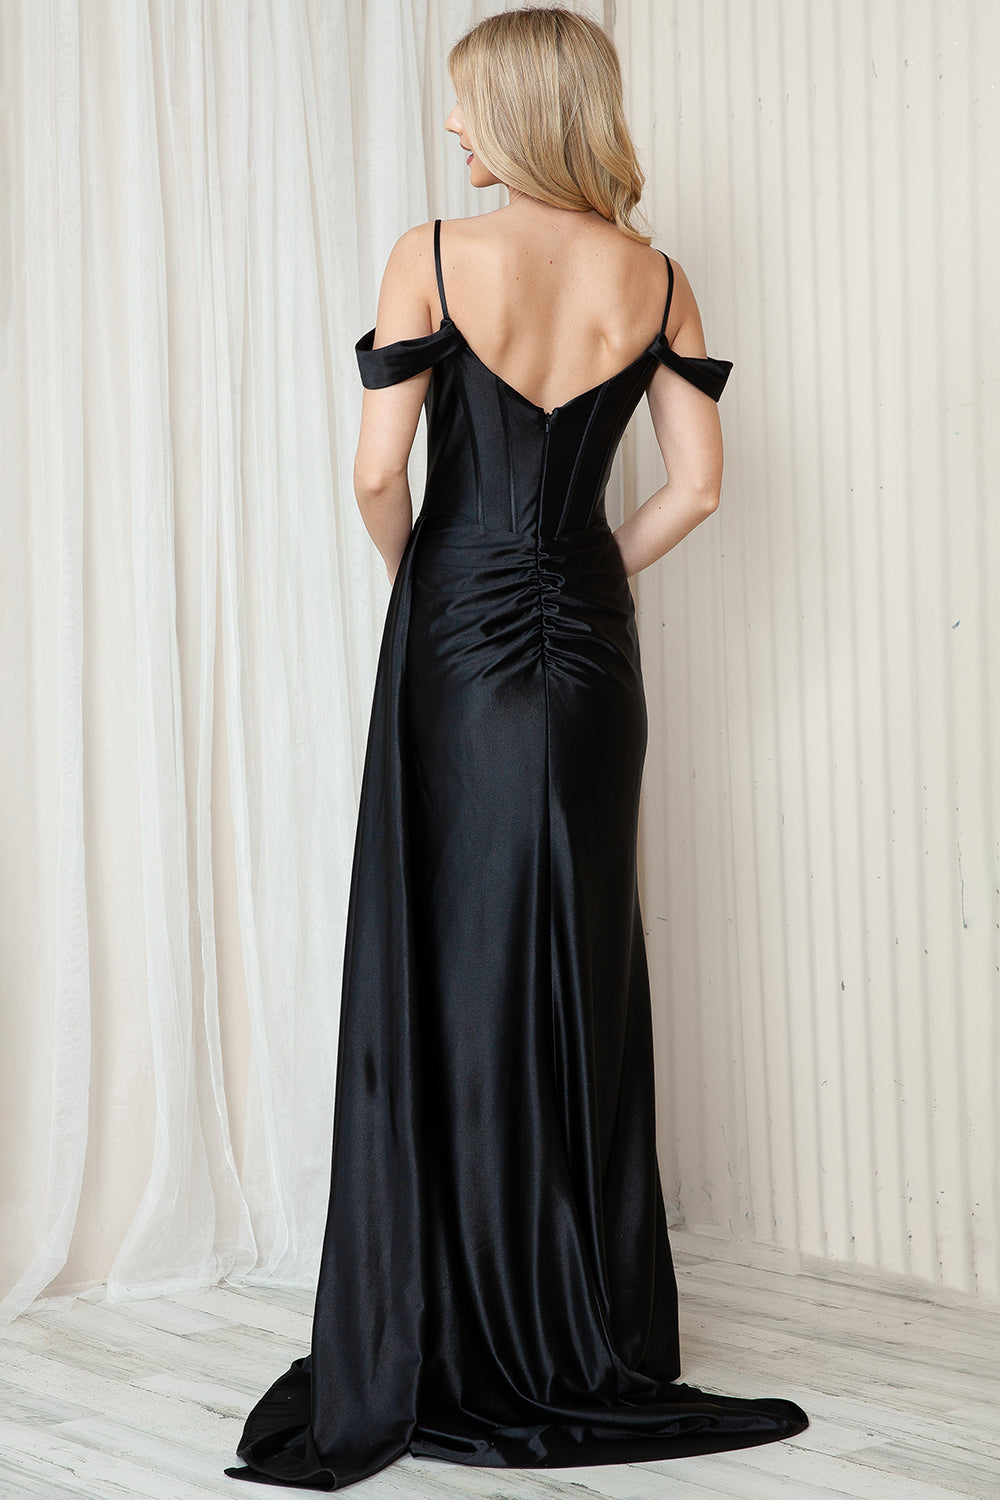 Off Shoulder Satin Side Slit Straps Long Evenin & Prom Dress AC5047 Elsy Style Evening Dress